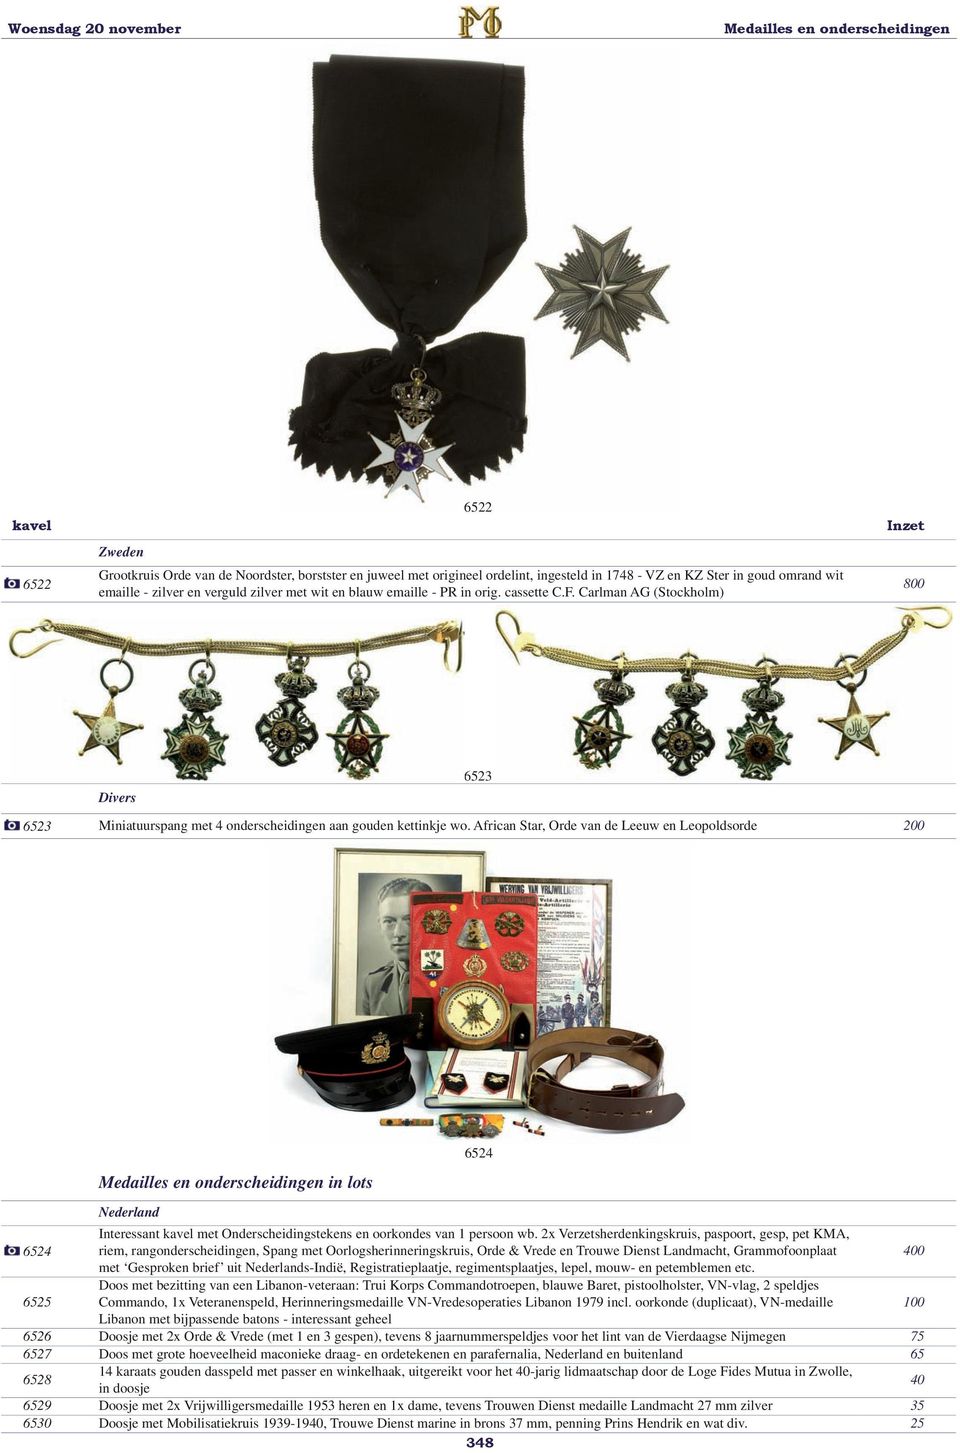 African Star, Orde van de Leeuw en Leopoldsorde 200 in lots 6524 Nederland 6524 Interessant kavel met Onderscheidingstekens en oorkondes van 1 persoon wb.